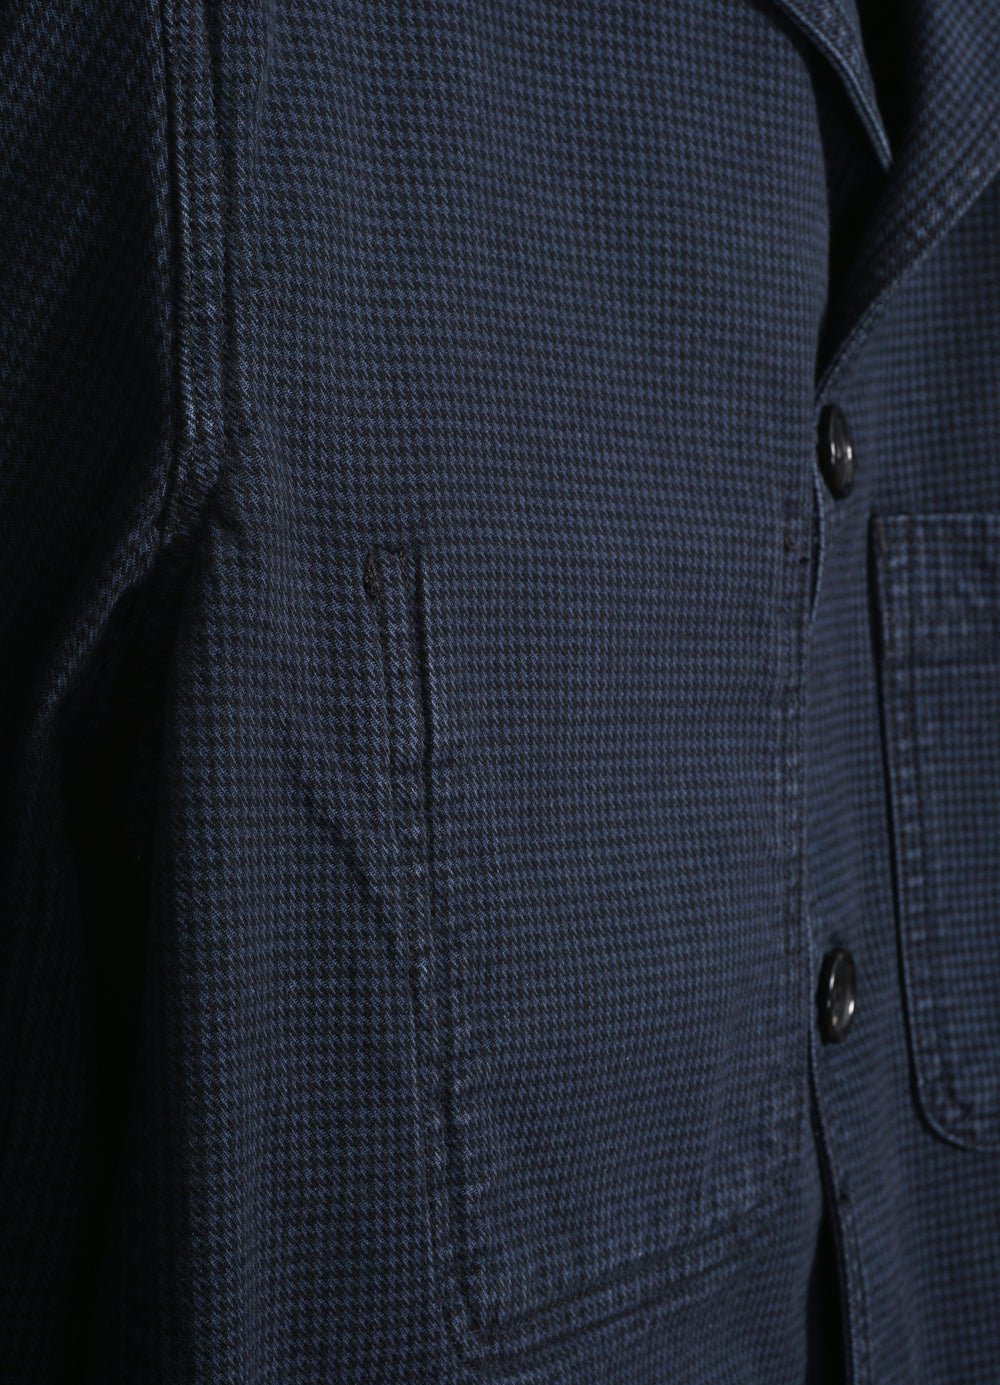 HANSEN GARMENTS - NICOLAI | Informal 4-button Blazer | Black Navy - HANSEN Garments